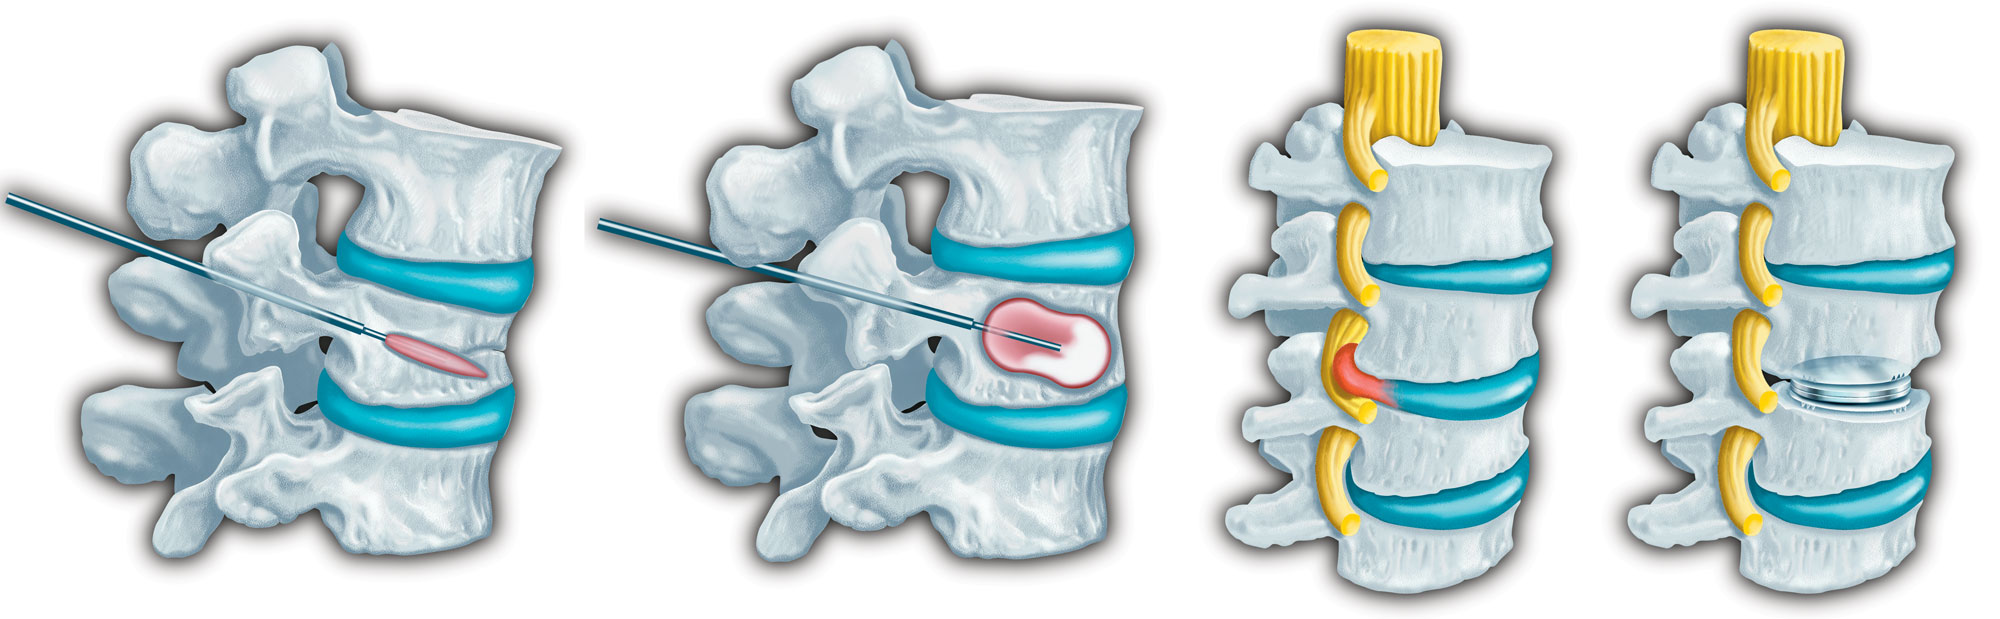 Spine medical illustration